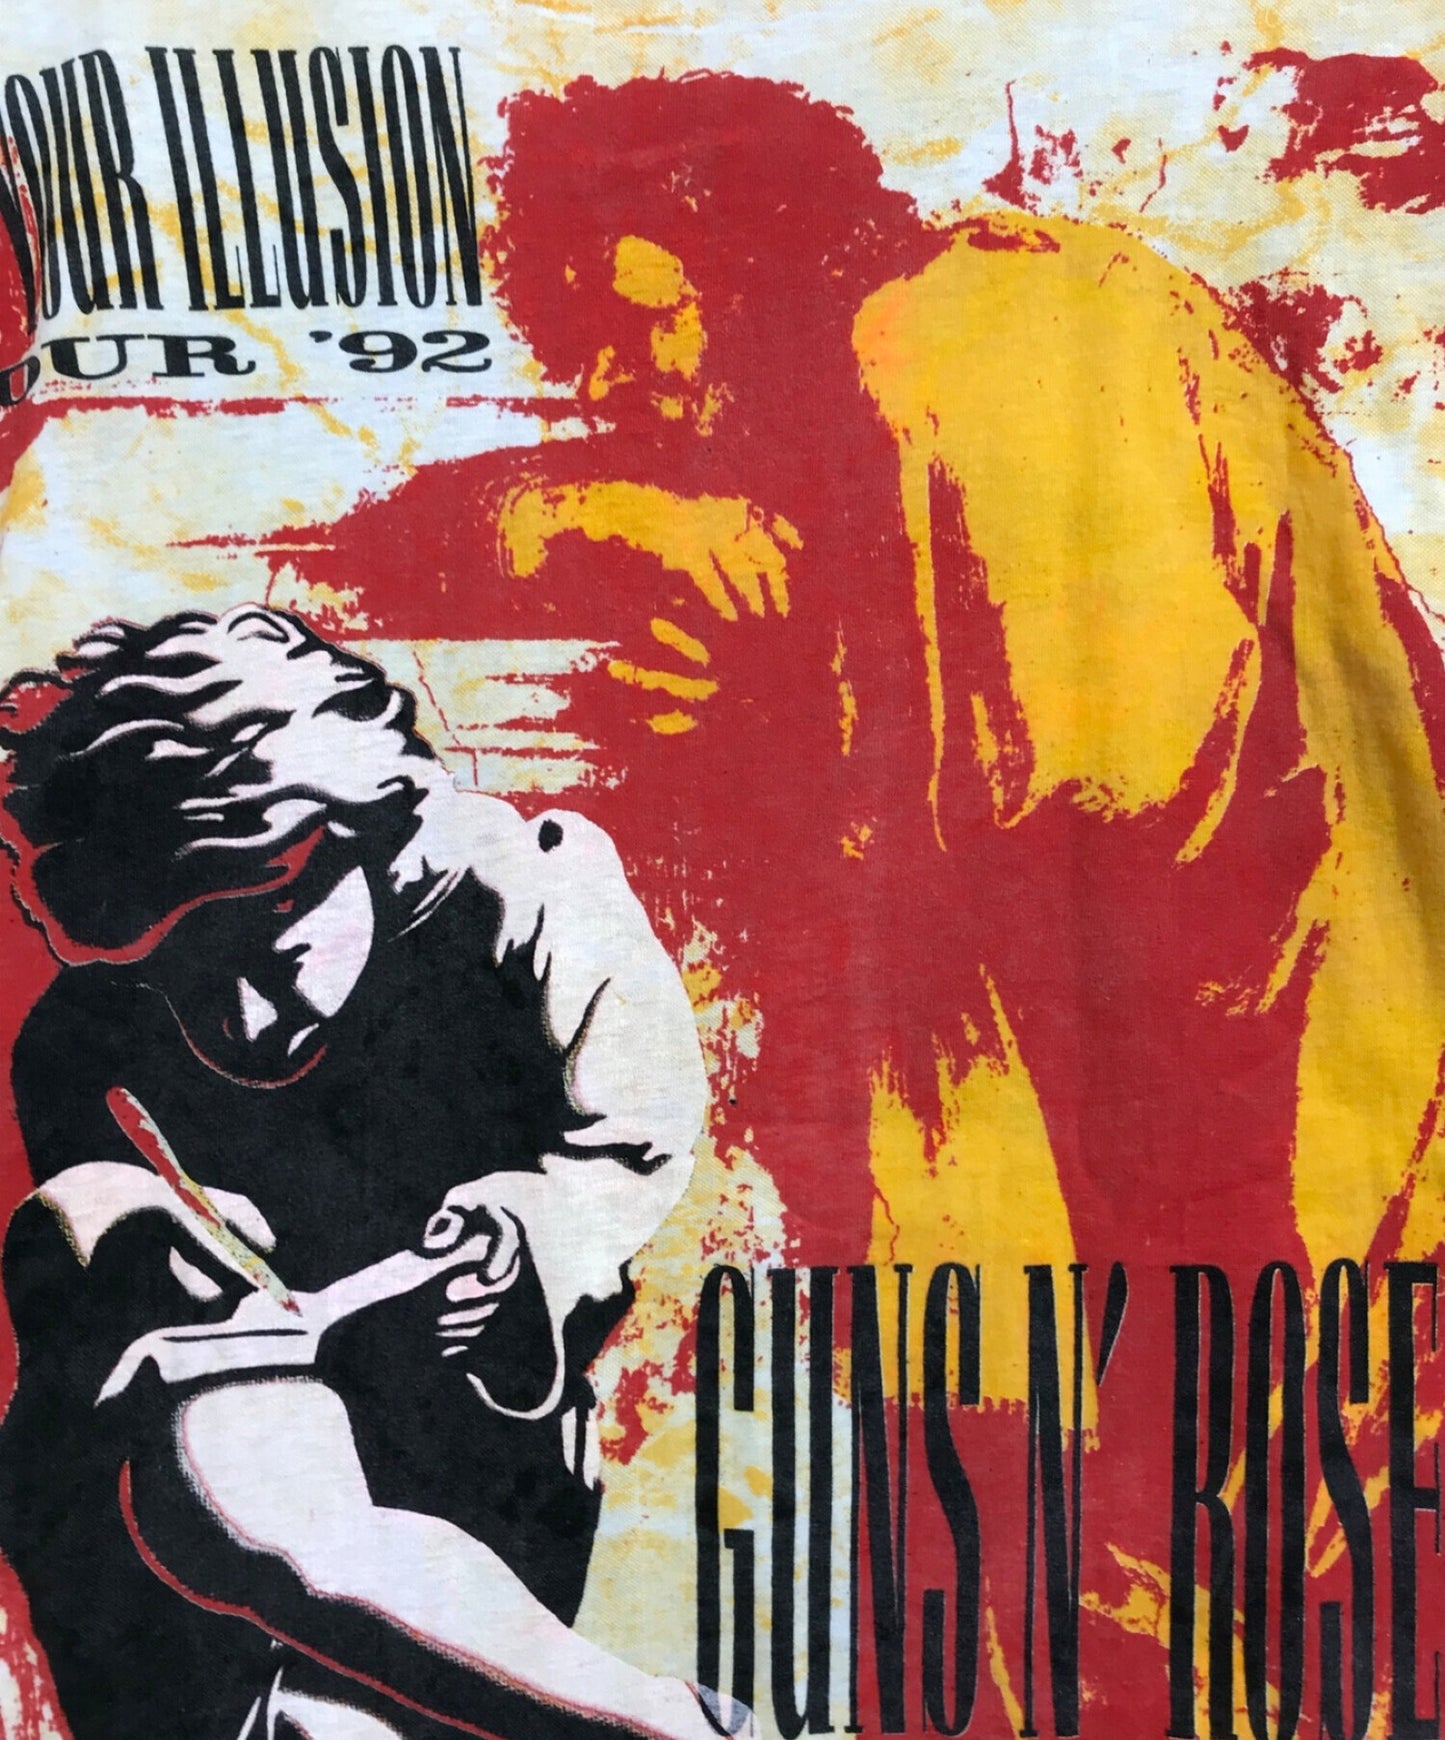 Guns n Roses ทั่วเสื้อยืดวงดนตรี